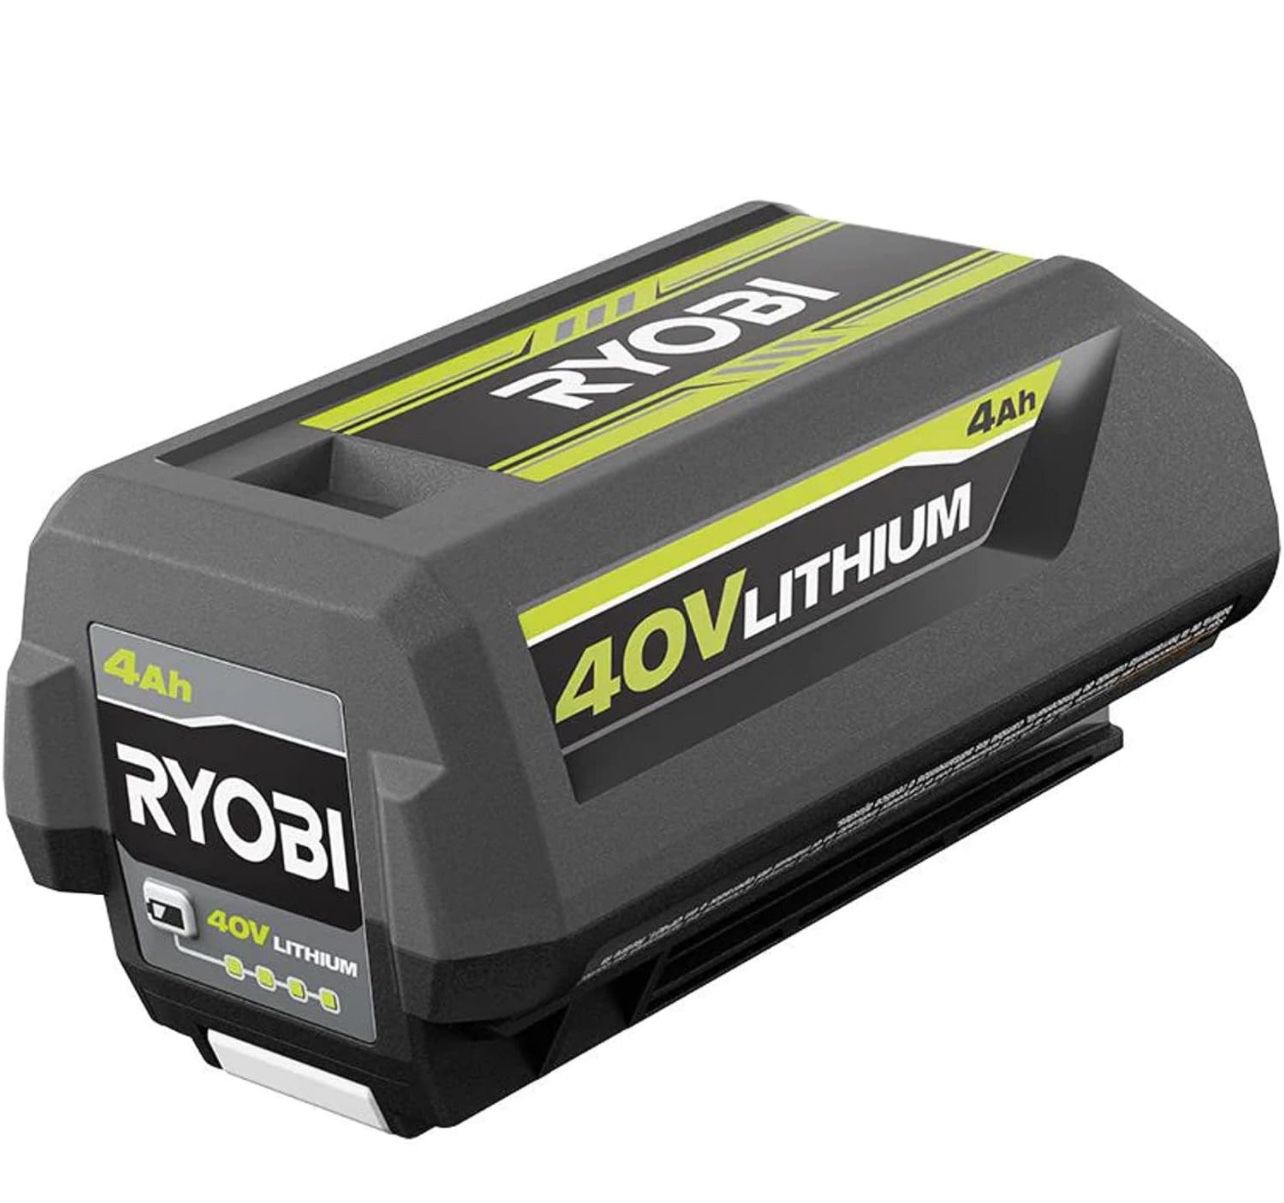 Ryobi 40v 4ah Battery Brand New Sealed 